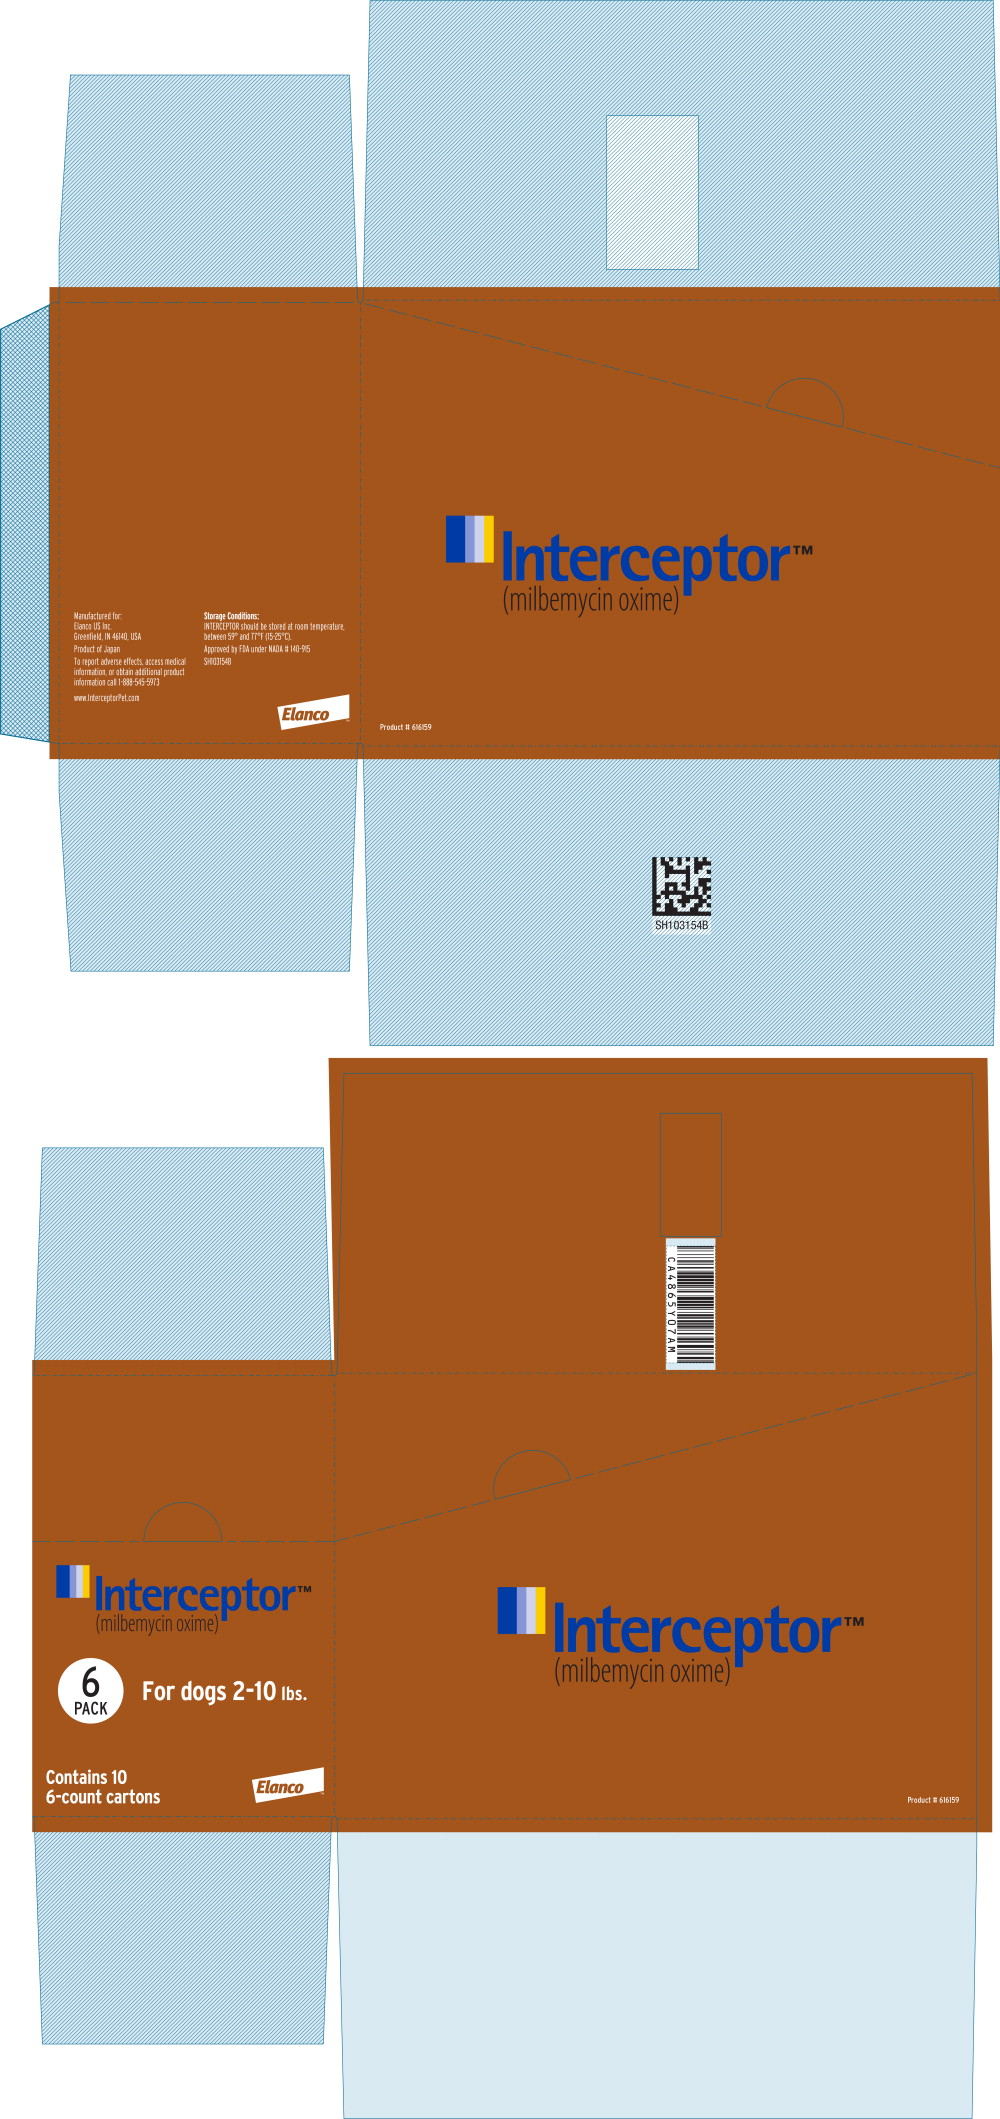 Principal Display Panel - Interceptor 2.3 mg Box Label
